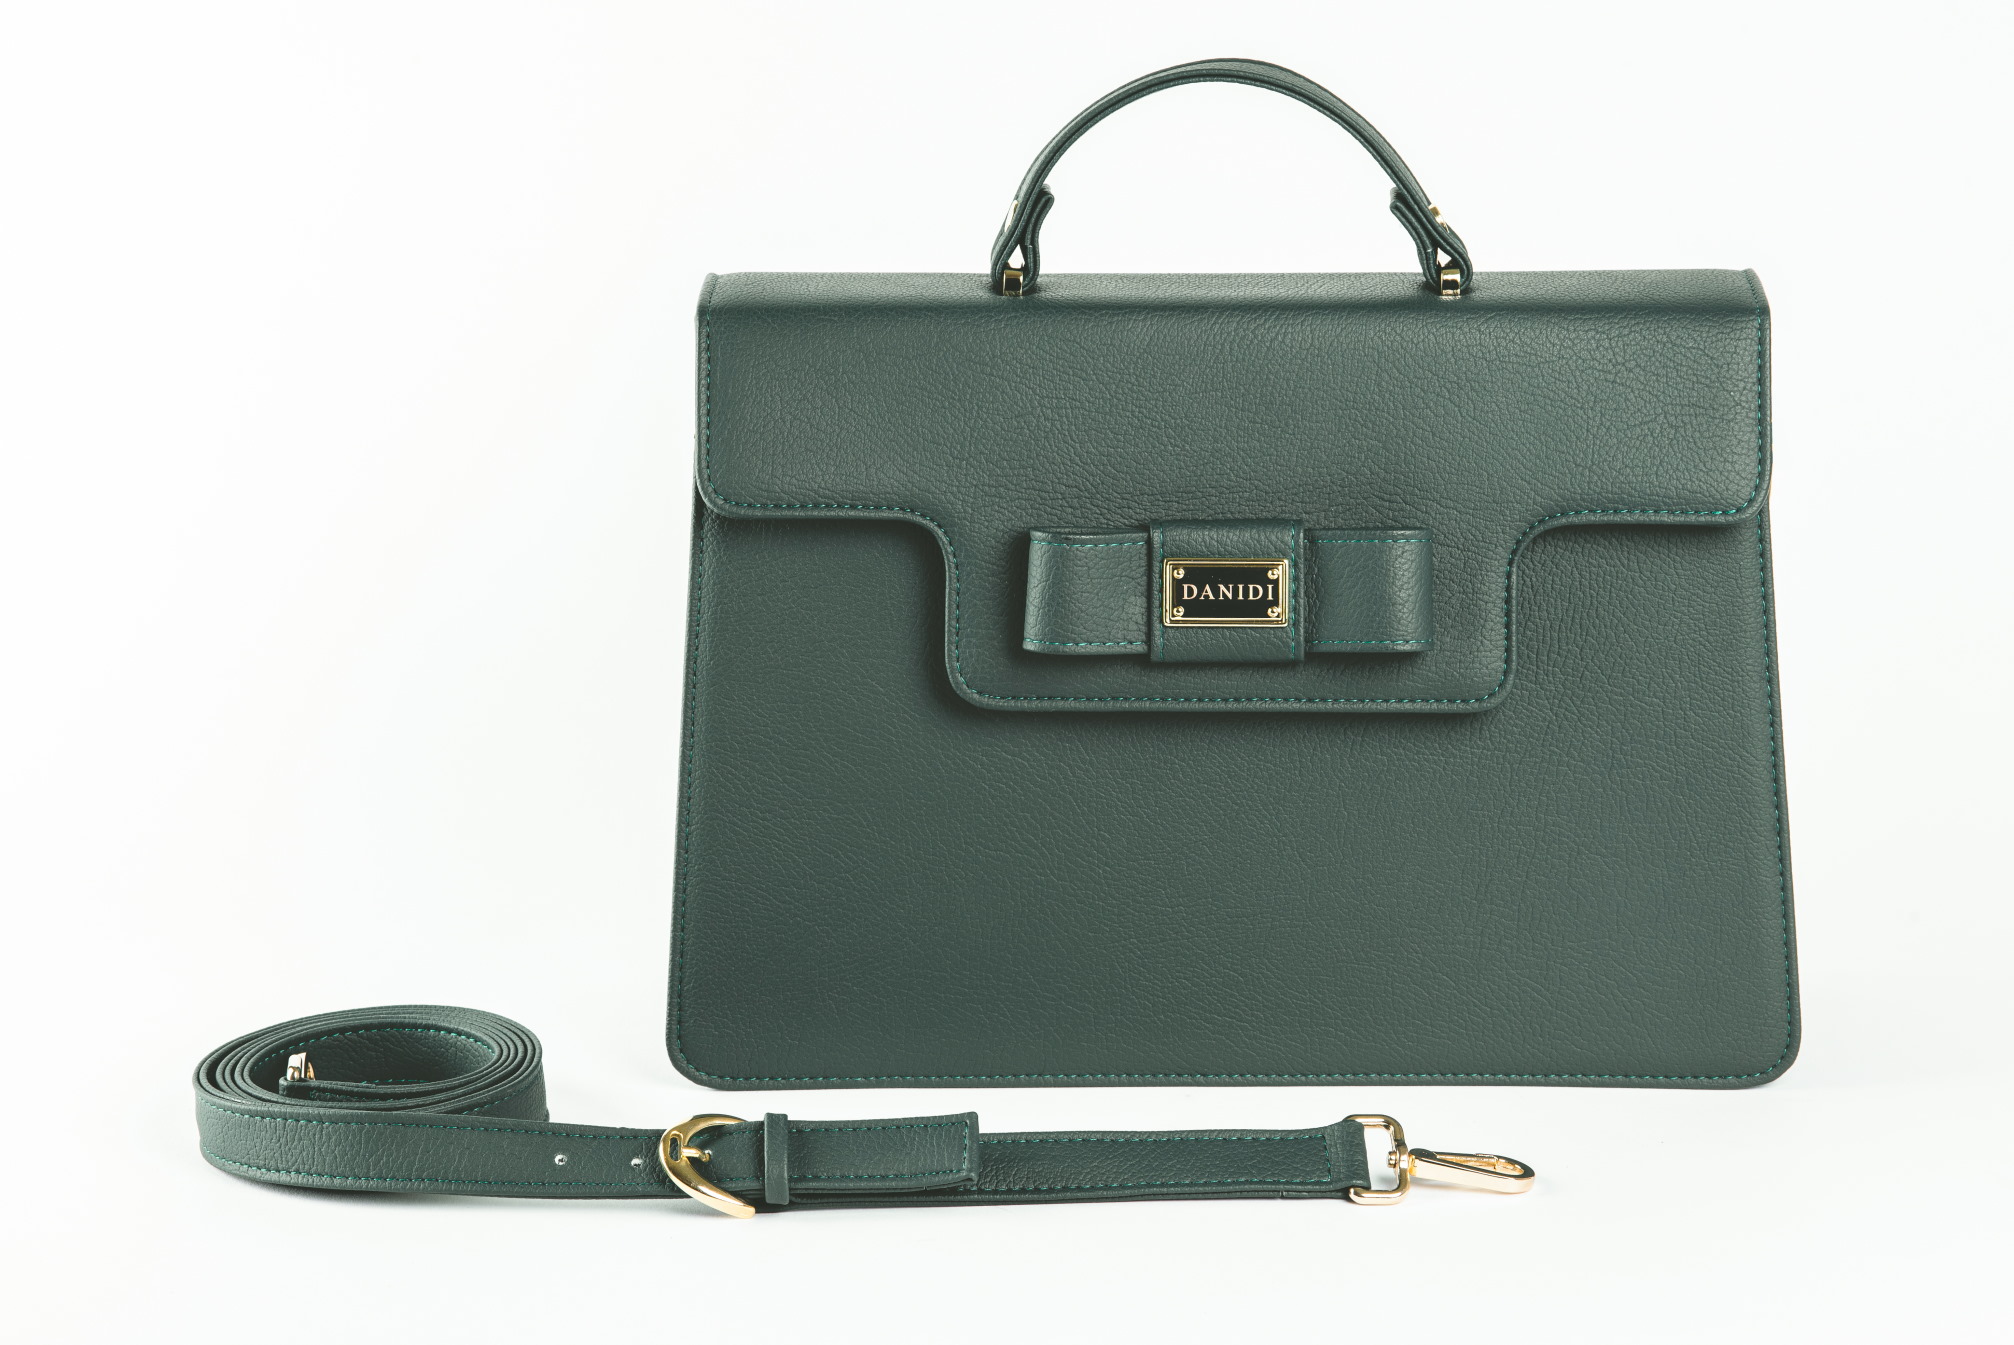 DANIDI je ekskluzivno predstavio najnoviji proizvod iz svoje tvornice - elegantnu poslovnu torbu za žene sa stavom!